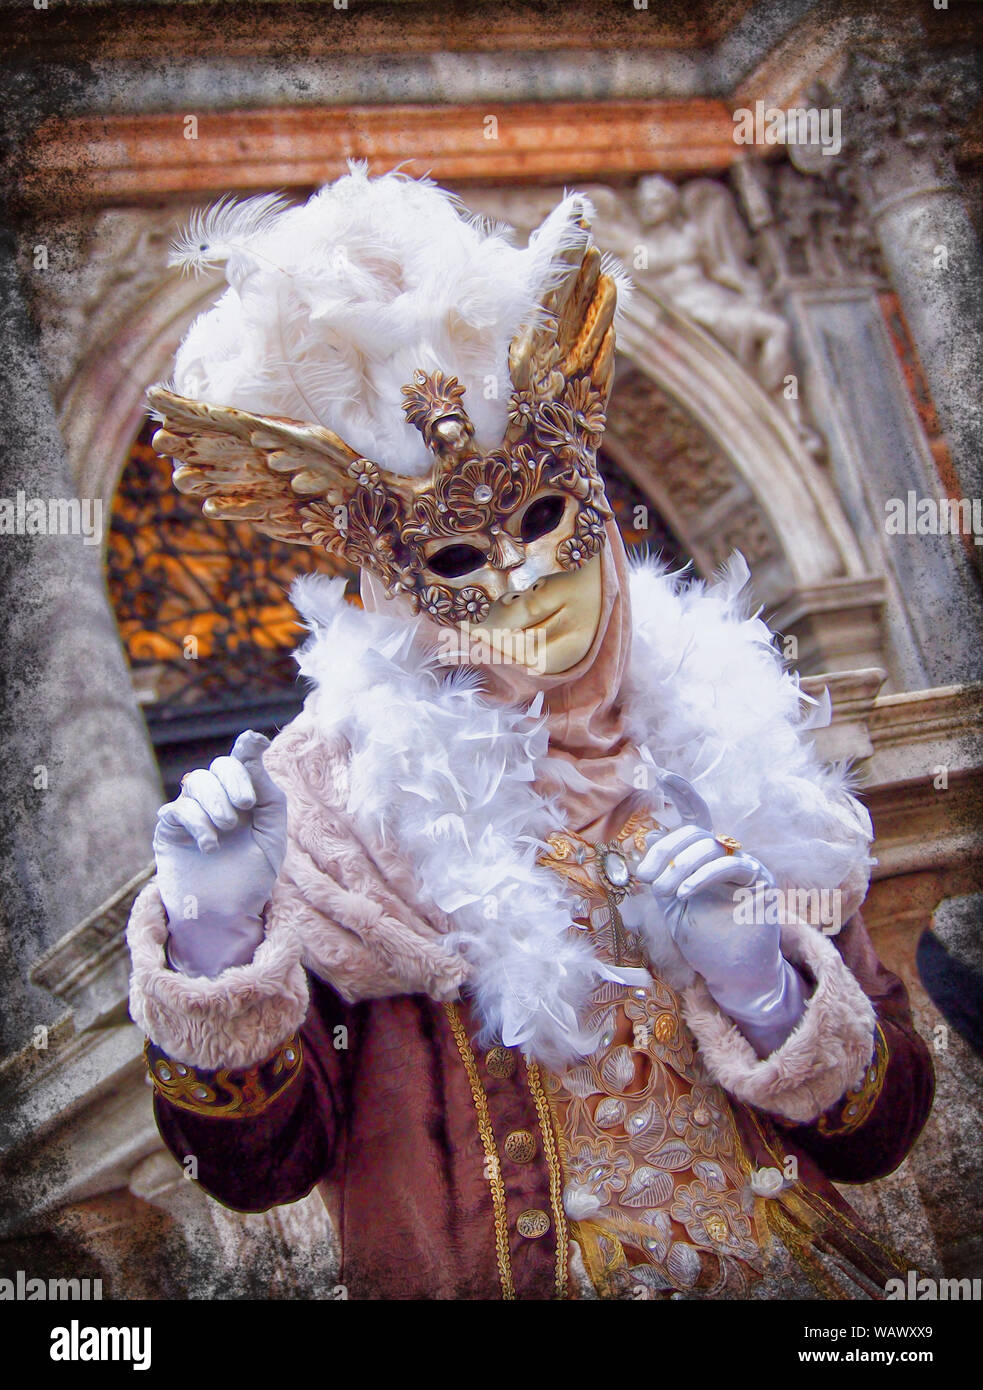 Karneval in Venedig (Karneval) findet in der Fastenzeit. Sehen Sie die Stadt von ihrer buntesten, mit Masken, Kostüme, und opulente masquerade Kugeln. Stockfoto